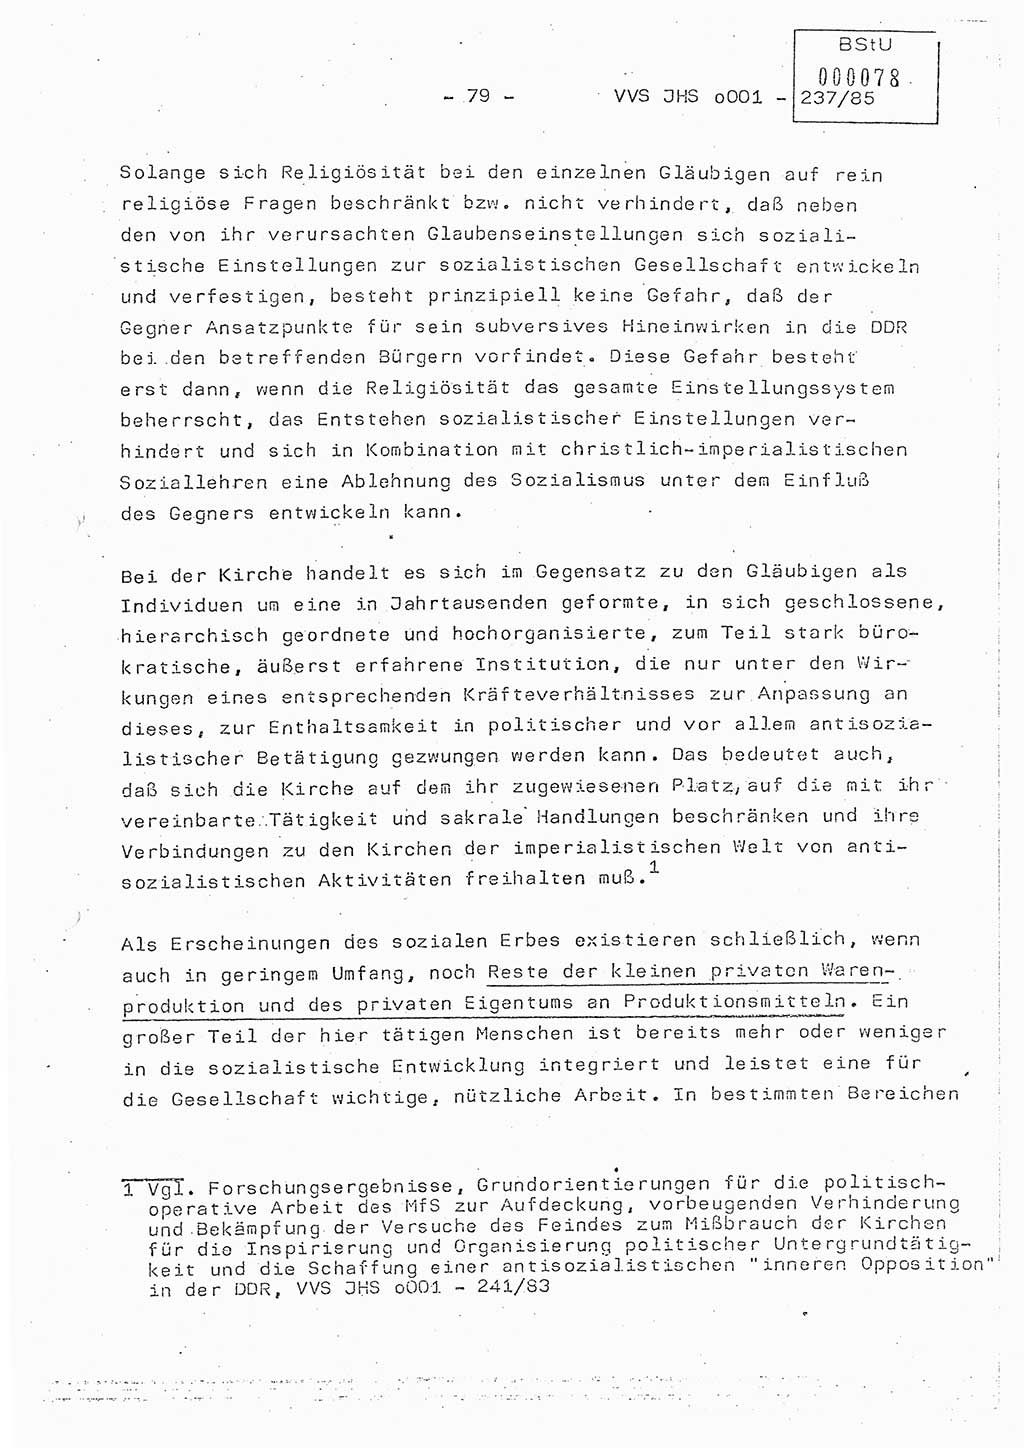 Dissertation Oberstleutnant Peter Jakulski (JHS), Oberstleutnat Christian Rudolph (HA Ⅸ), Major Horst Böttger (ZMD), Major Wolfgang Grüneberg (JHS), Major Albert Meutsch (JHS), Ministerium für Staatssicherheit (MfS) [Deutsche Demokratische Republik (DDR)], Juristische Hochschule (JHS), Vertrauliche Verschlußsache (VVS) o001-237/85, Potsdam 1985, Seite 79 (Diss. MfS DDR JHS VVS o001-237/85 1985, S. 79)